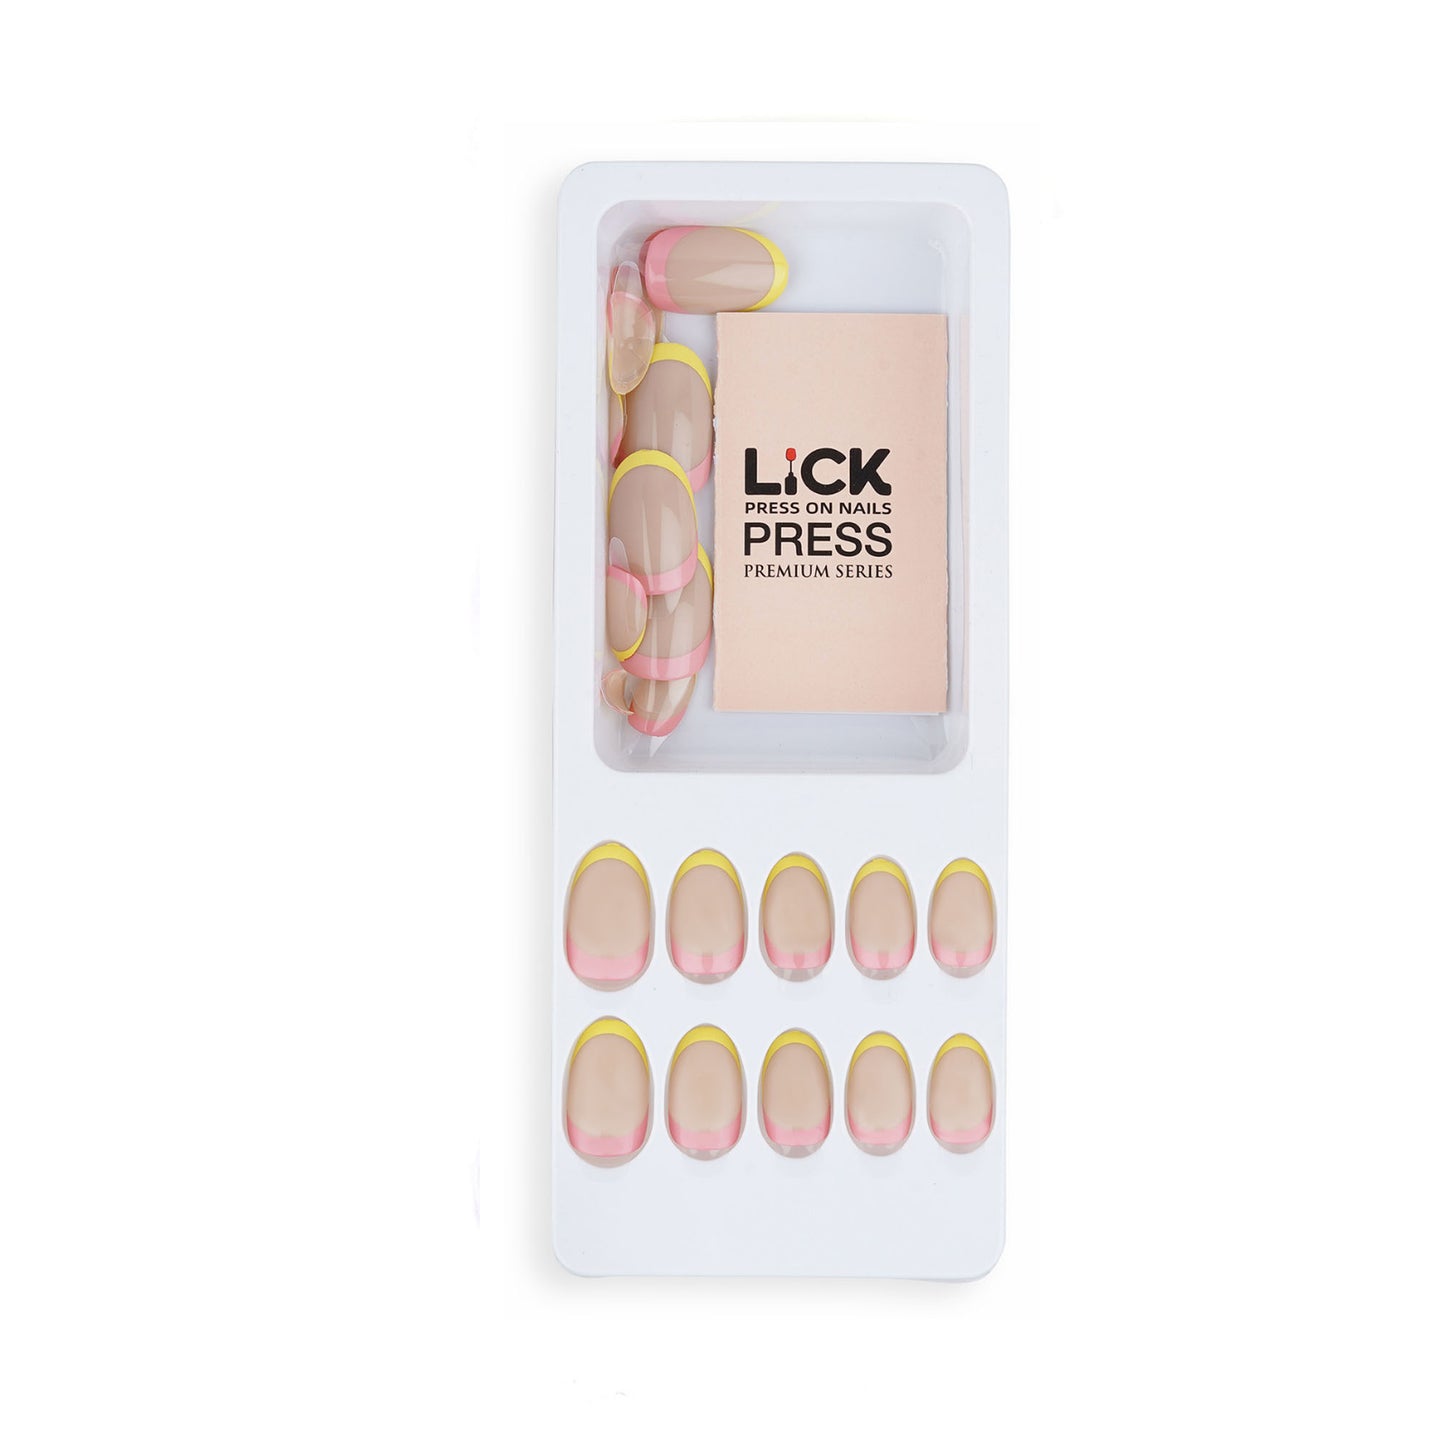 Lick nail glossy nude